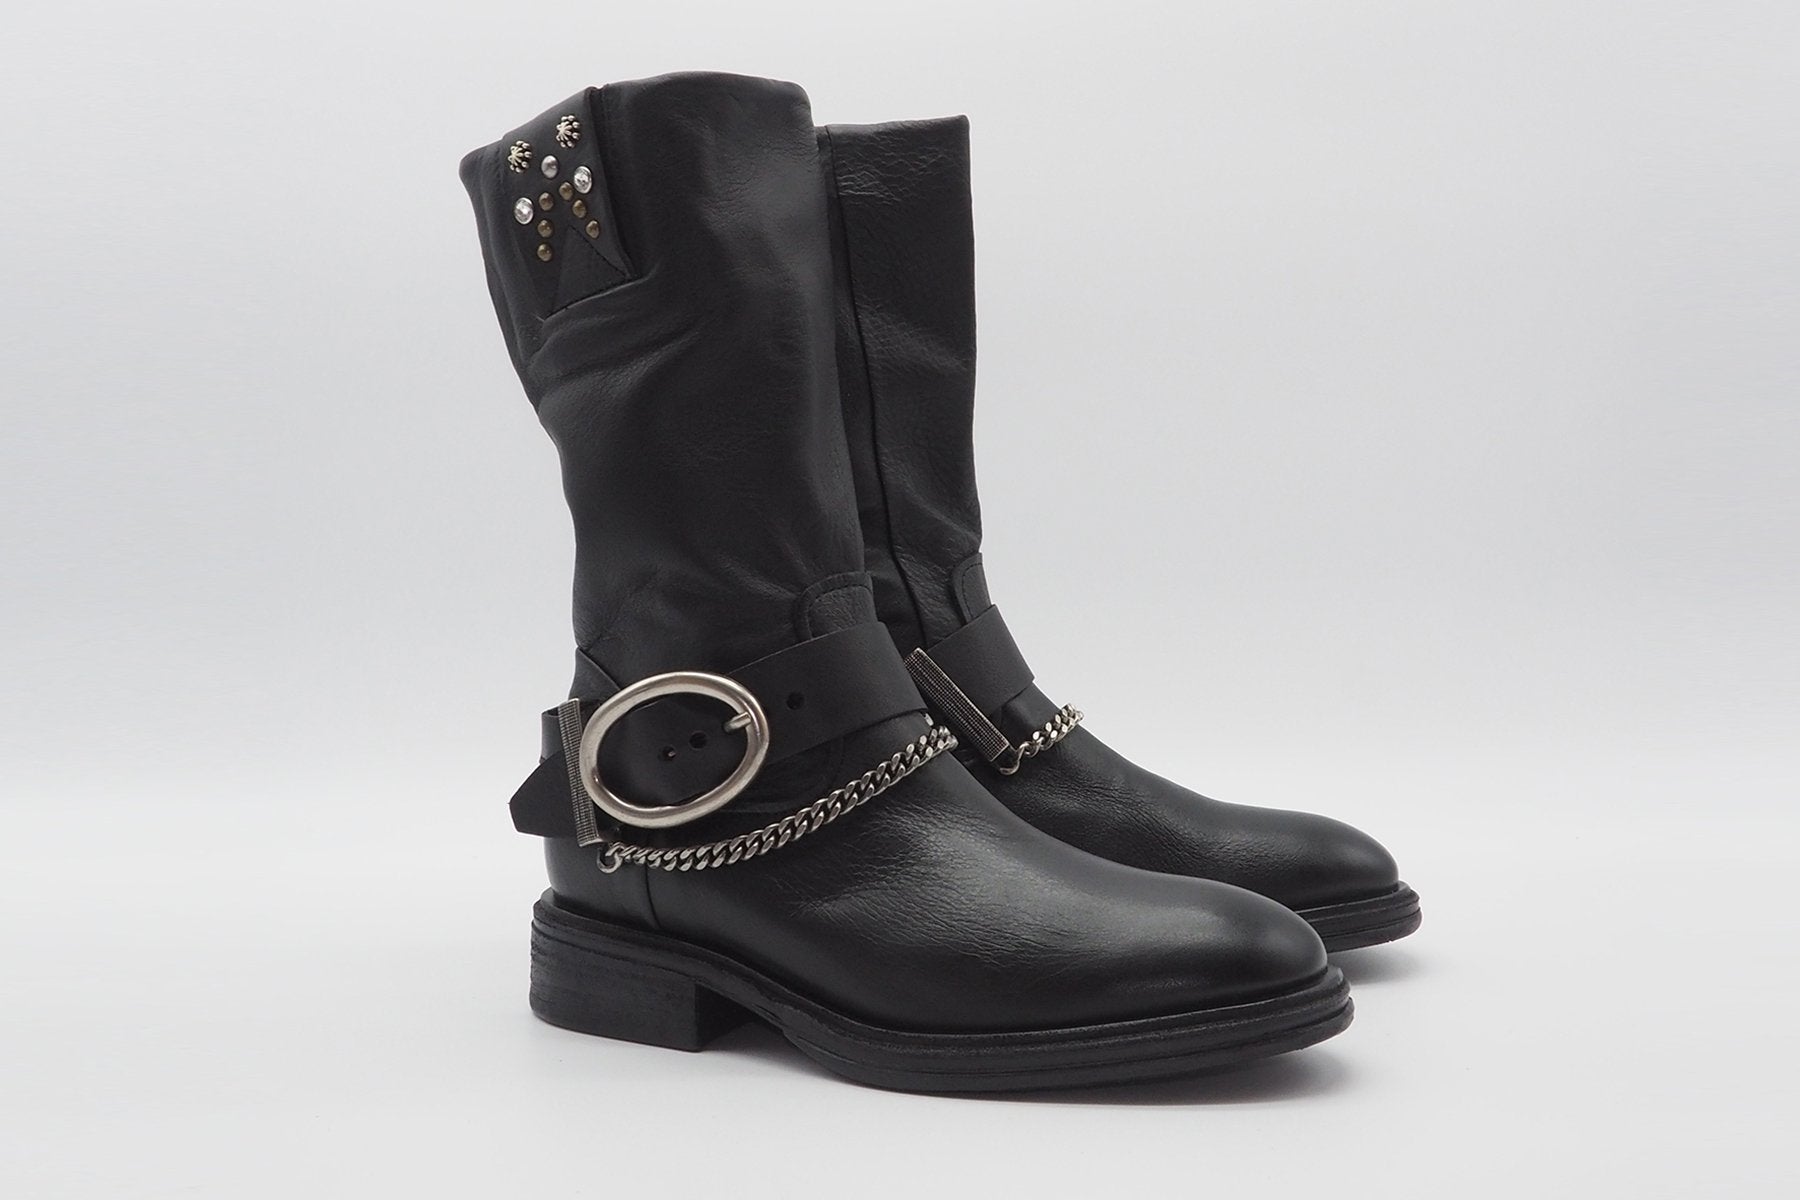 Damen Boots in Schwarz mit opulenter Schnalle & Kettendetail Damen Boots A.S. 98